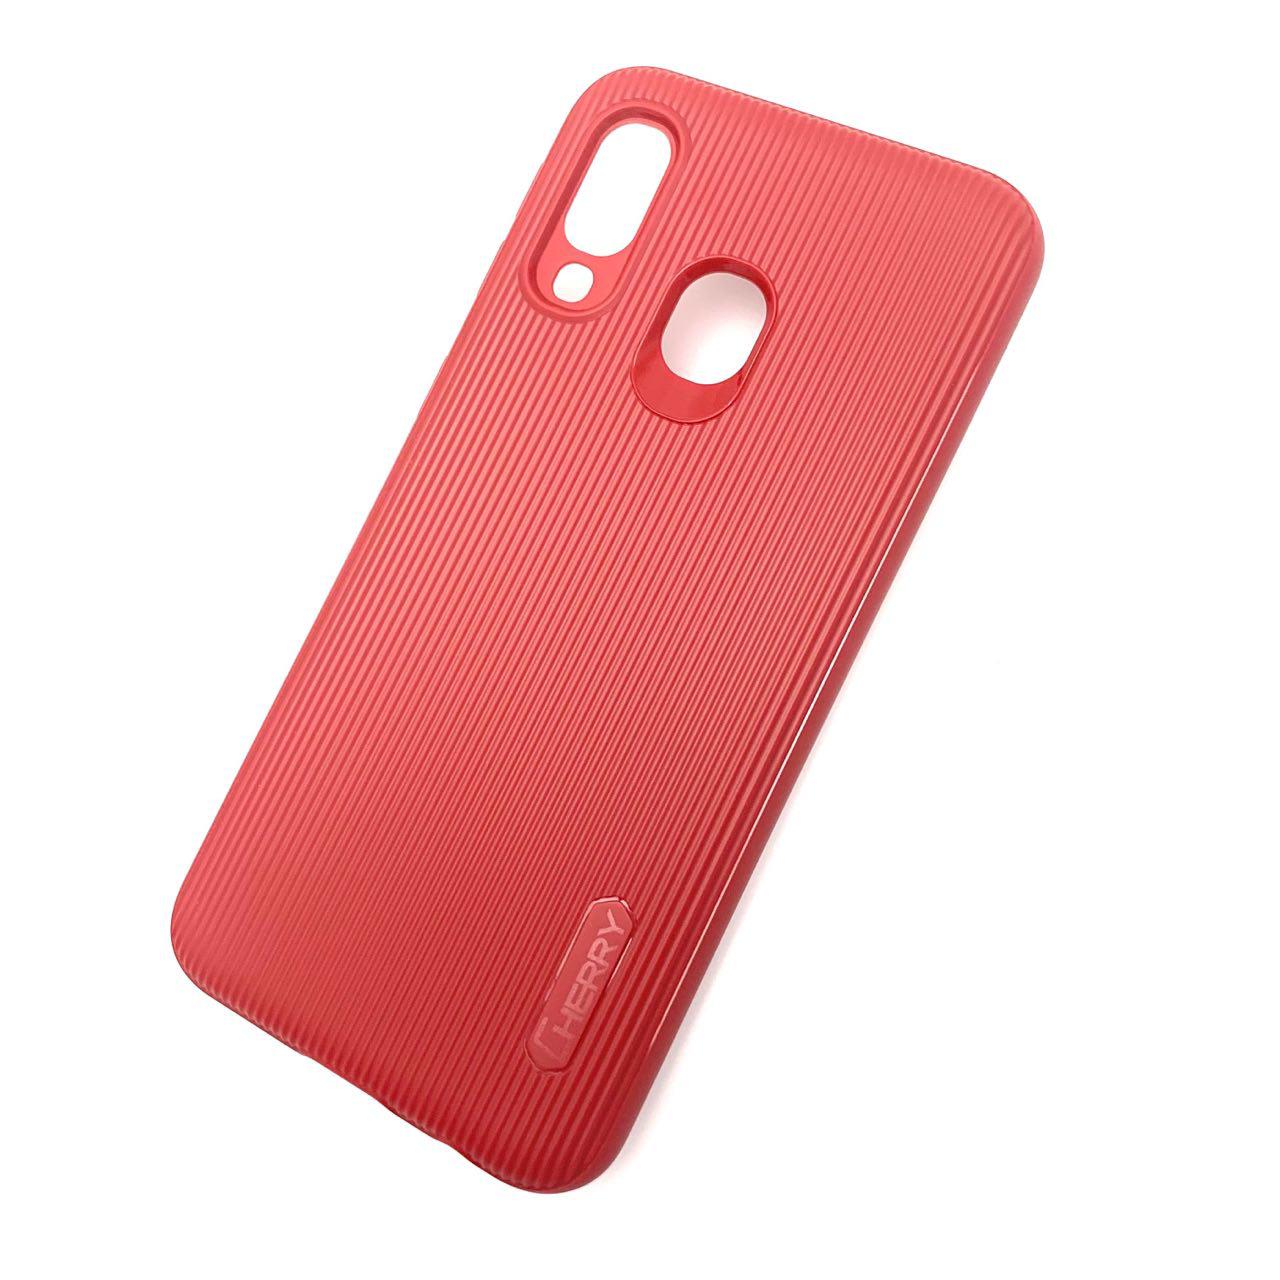 Чехол накладка Cherry для SAMSUNG Galaxy A40 (SM-A405), силикон, полоски, цвет темно красный.